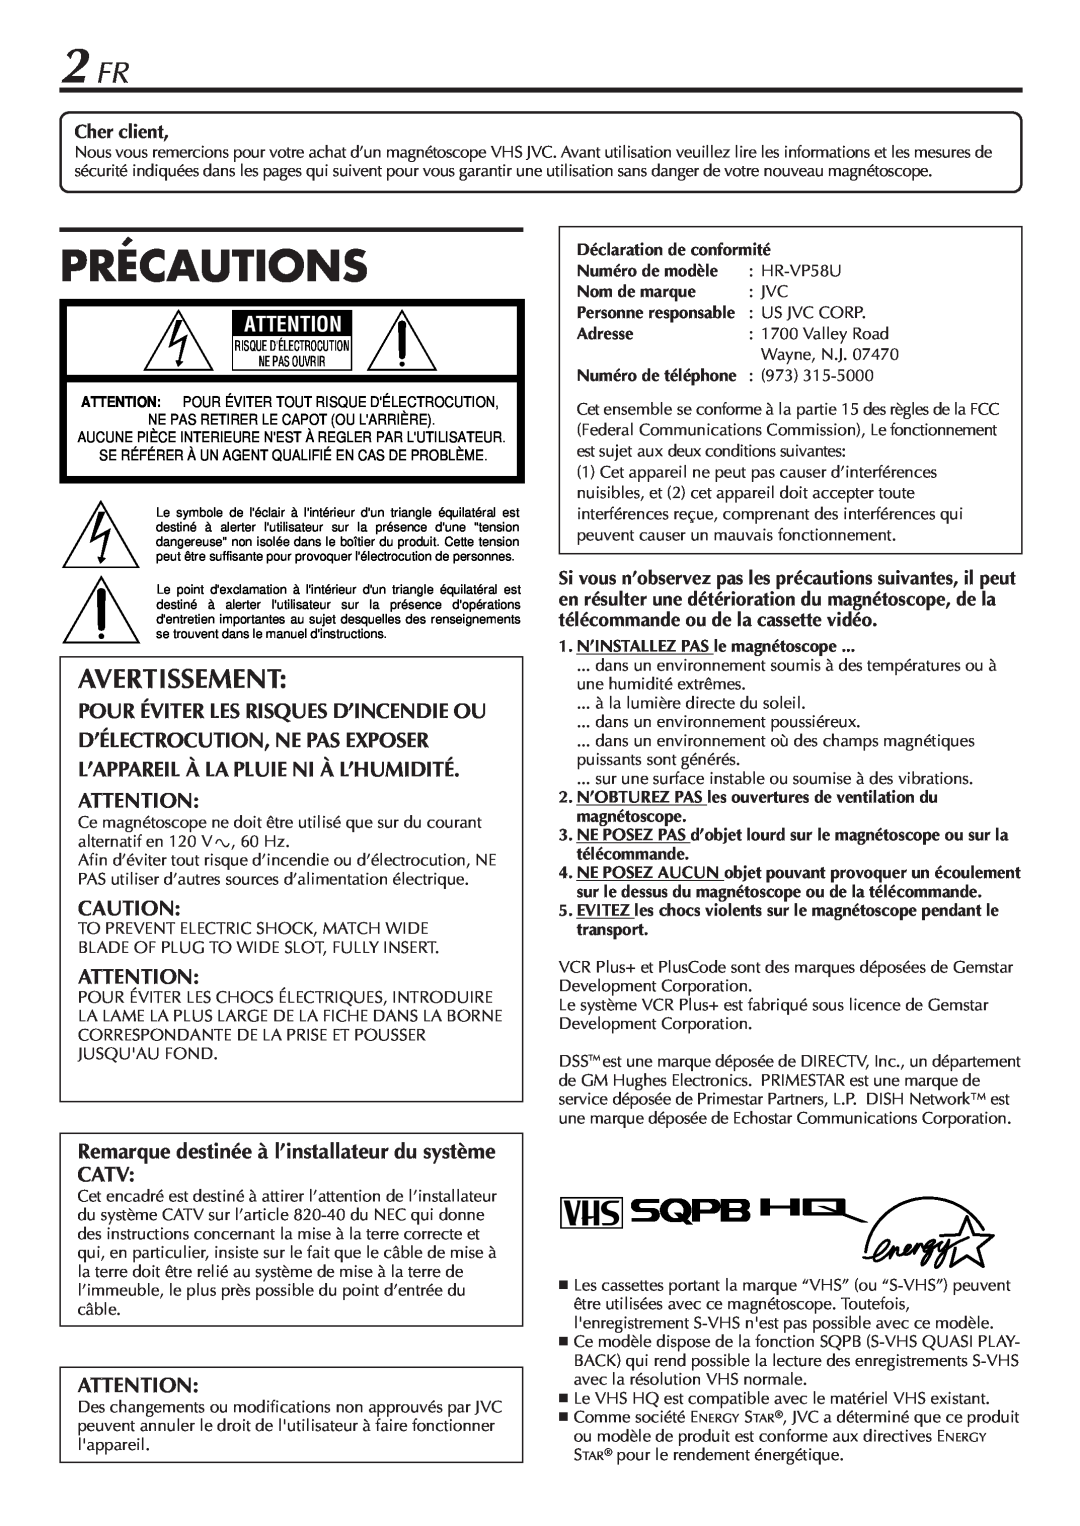 JVC HR-VP58U manual 2 FR, Précautions, Avertissement, Déclaration de conformité, Nom de marque, Adresse 